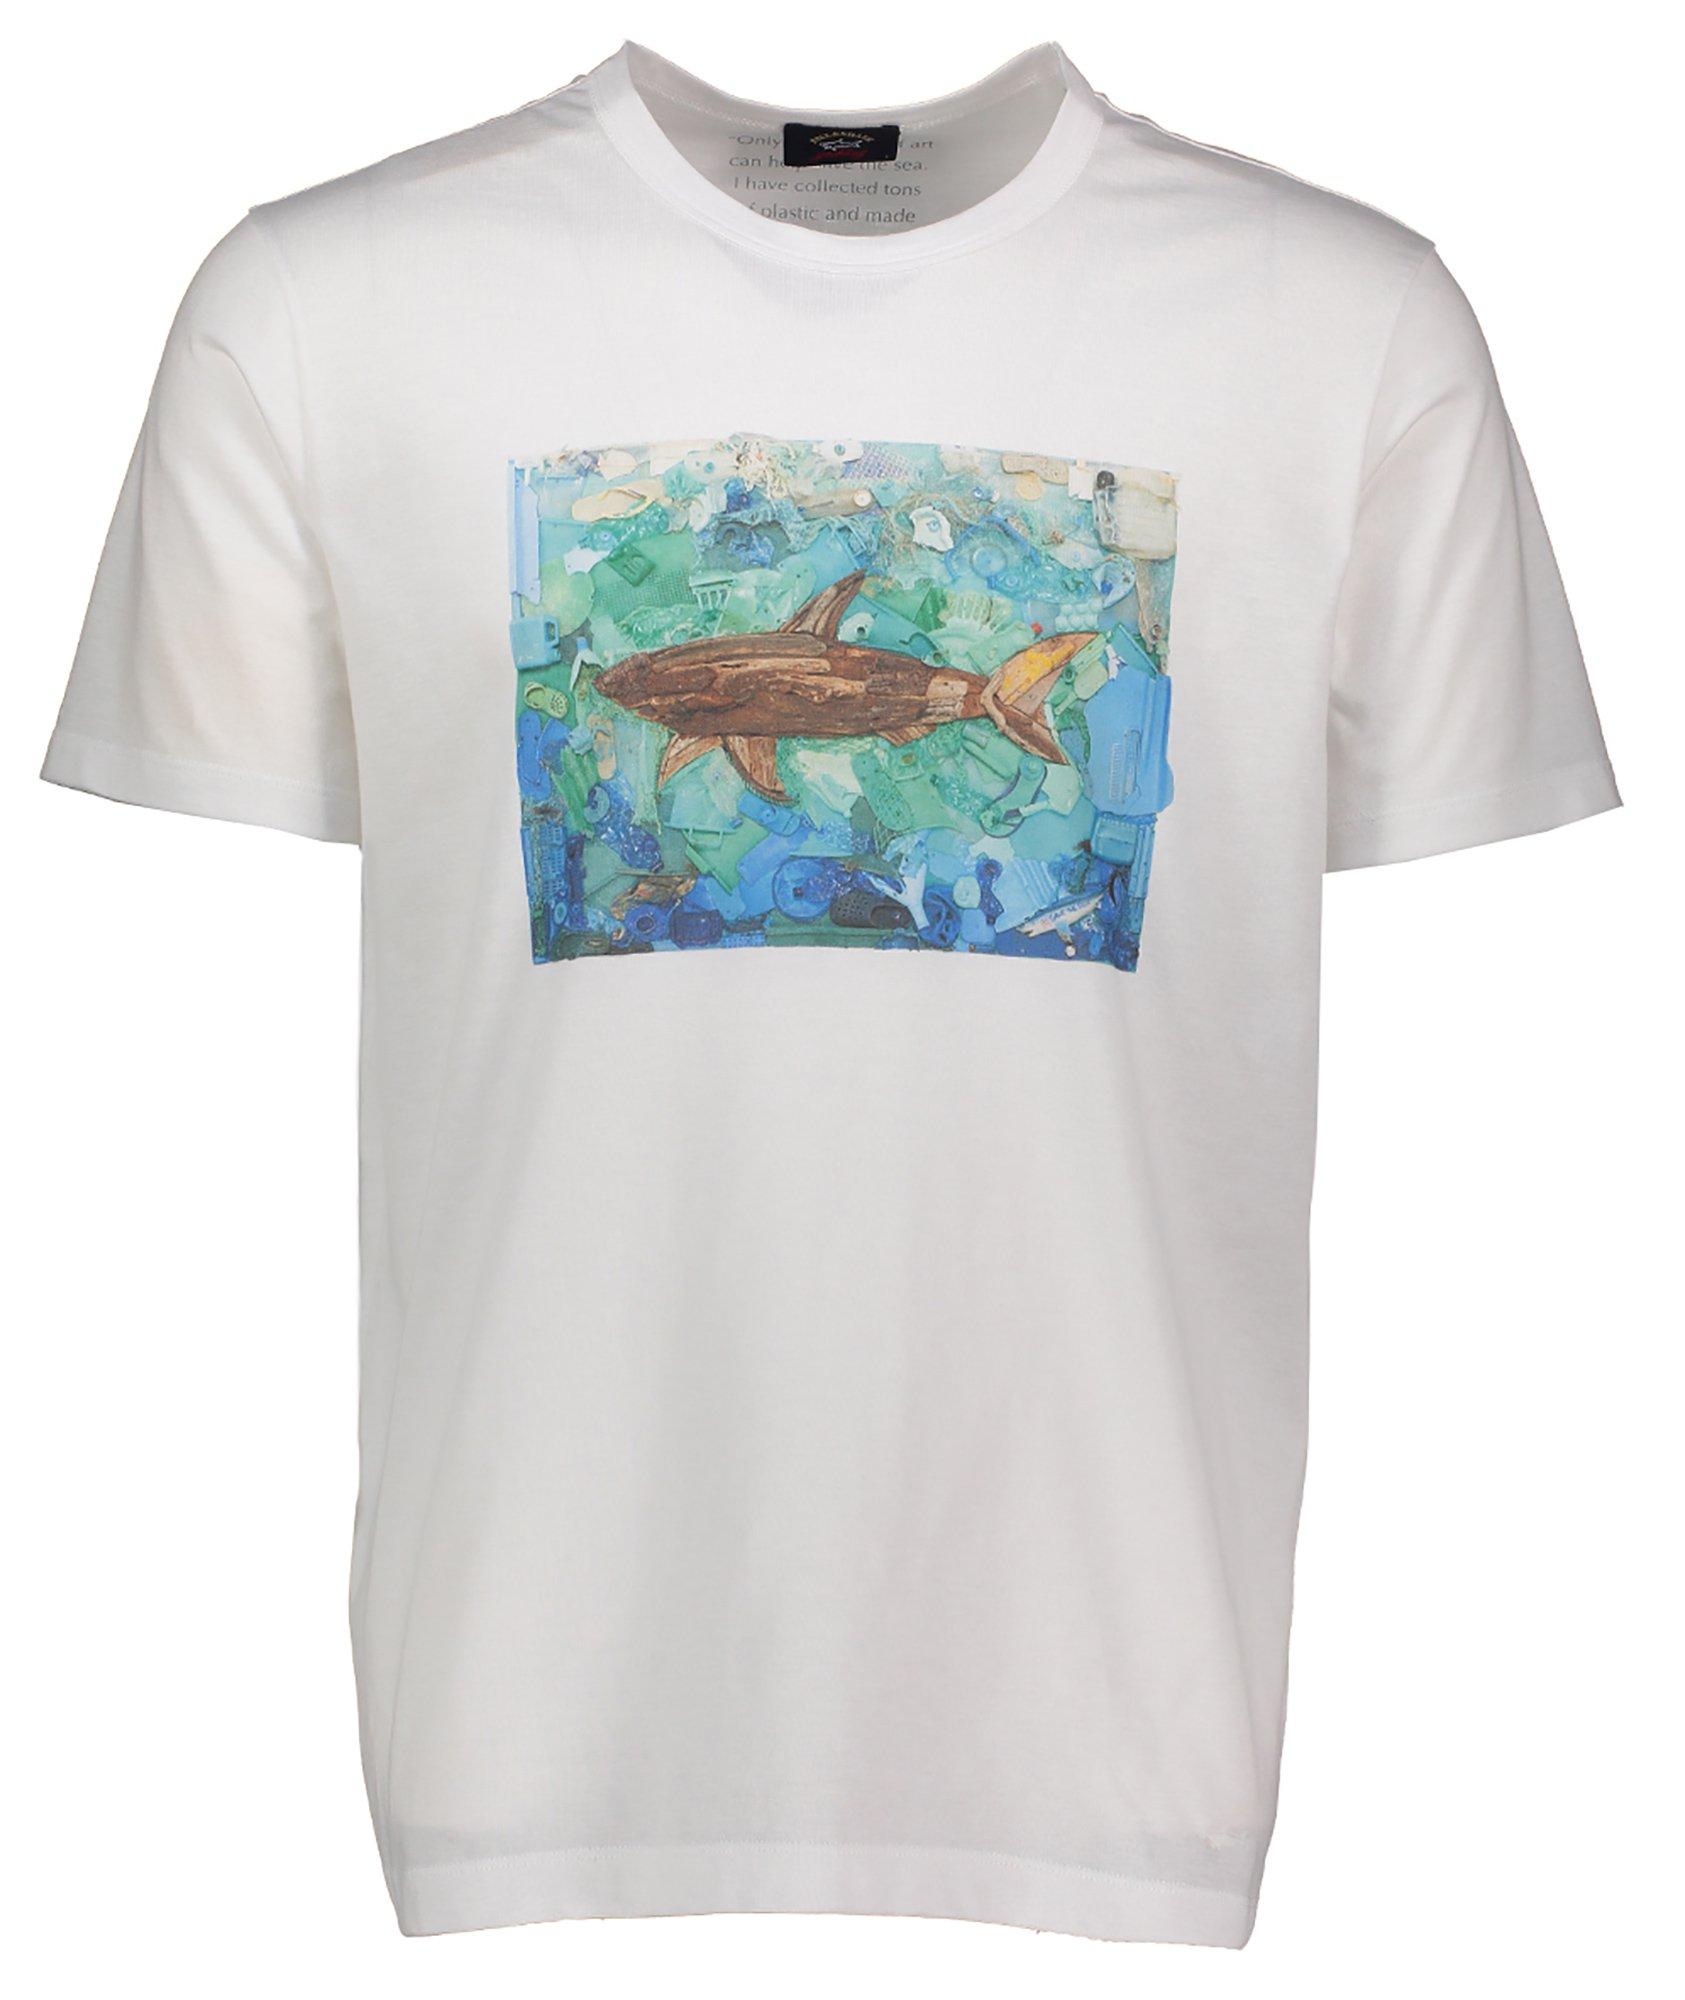 T-shirt imprimé en coton, collection Save the Sea image 0